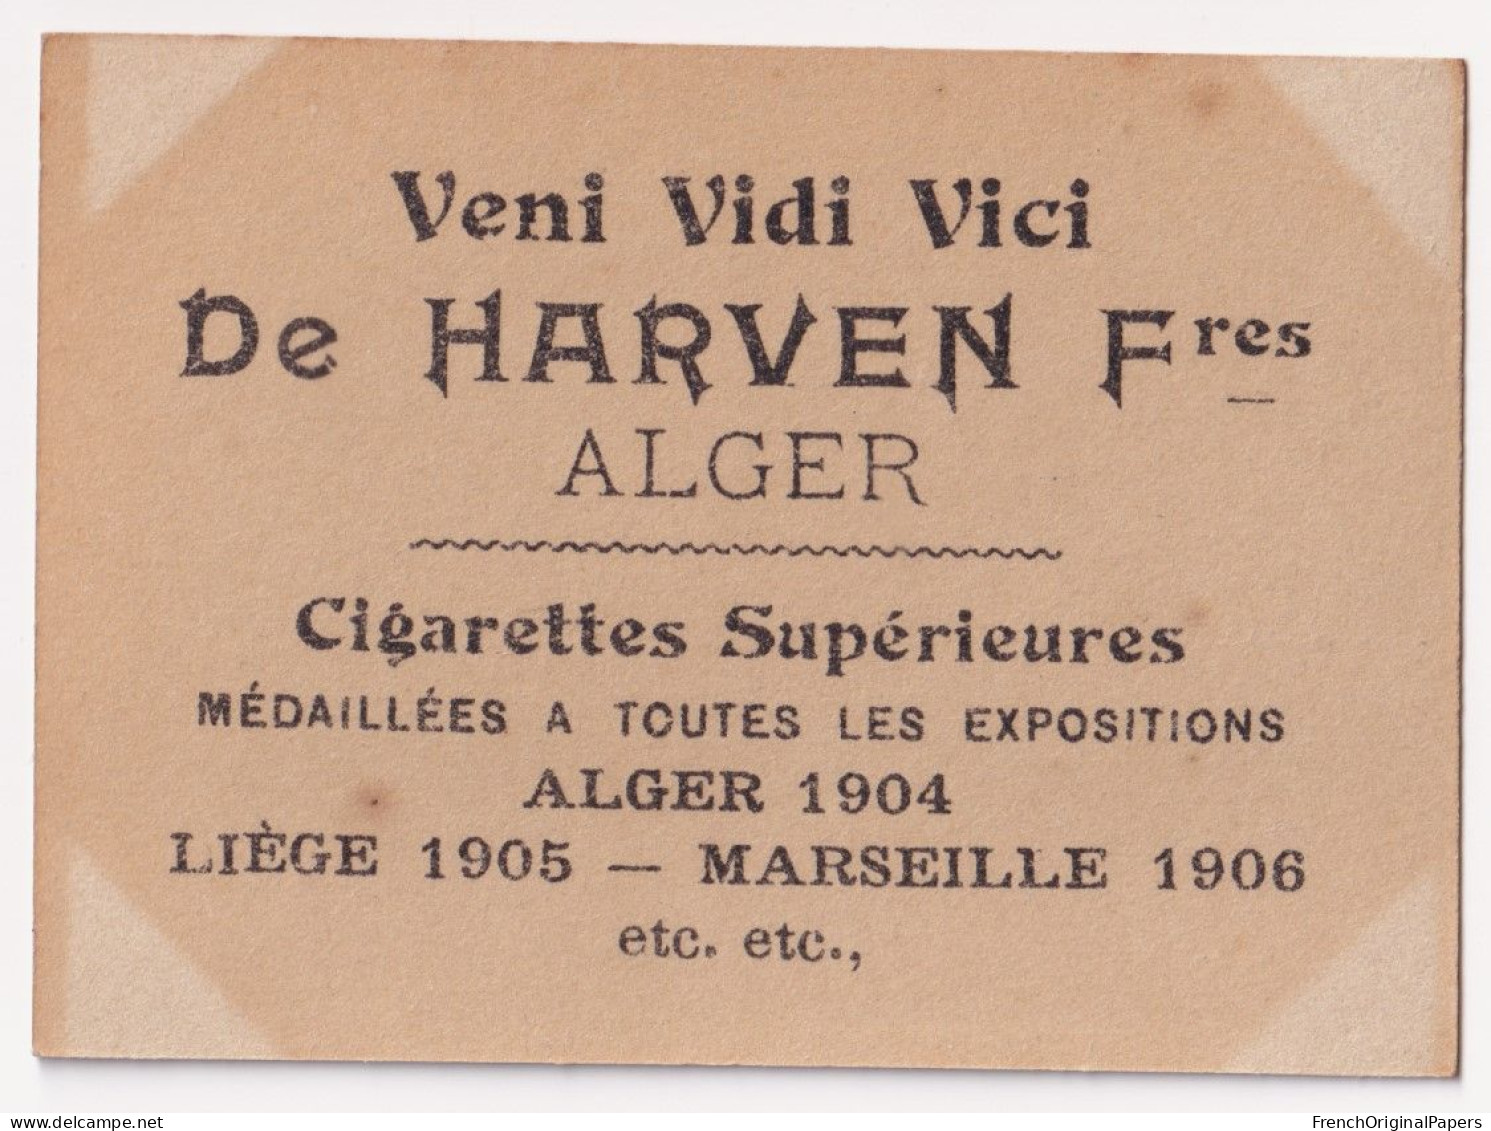 Néros - Cigarettes De Harven 1900/10 Photo Femme Sexy Pinup Lady Pin-up Woman Nue Nude Nu Seins Nus Vintage Alger A62-8 - Autres Marques